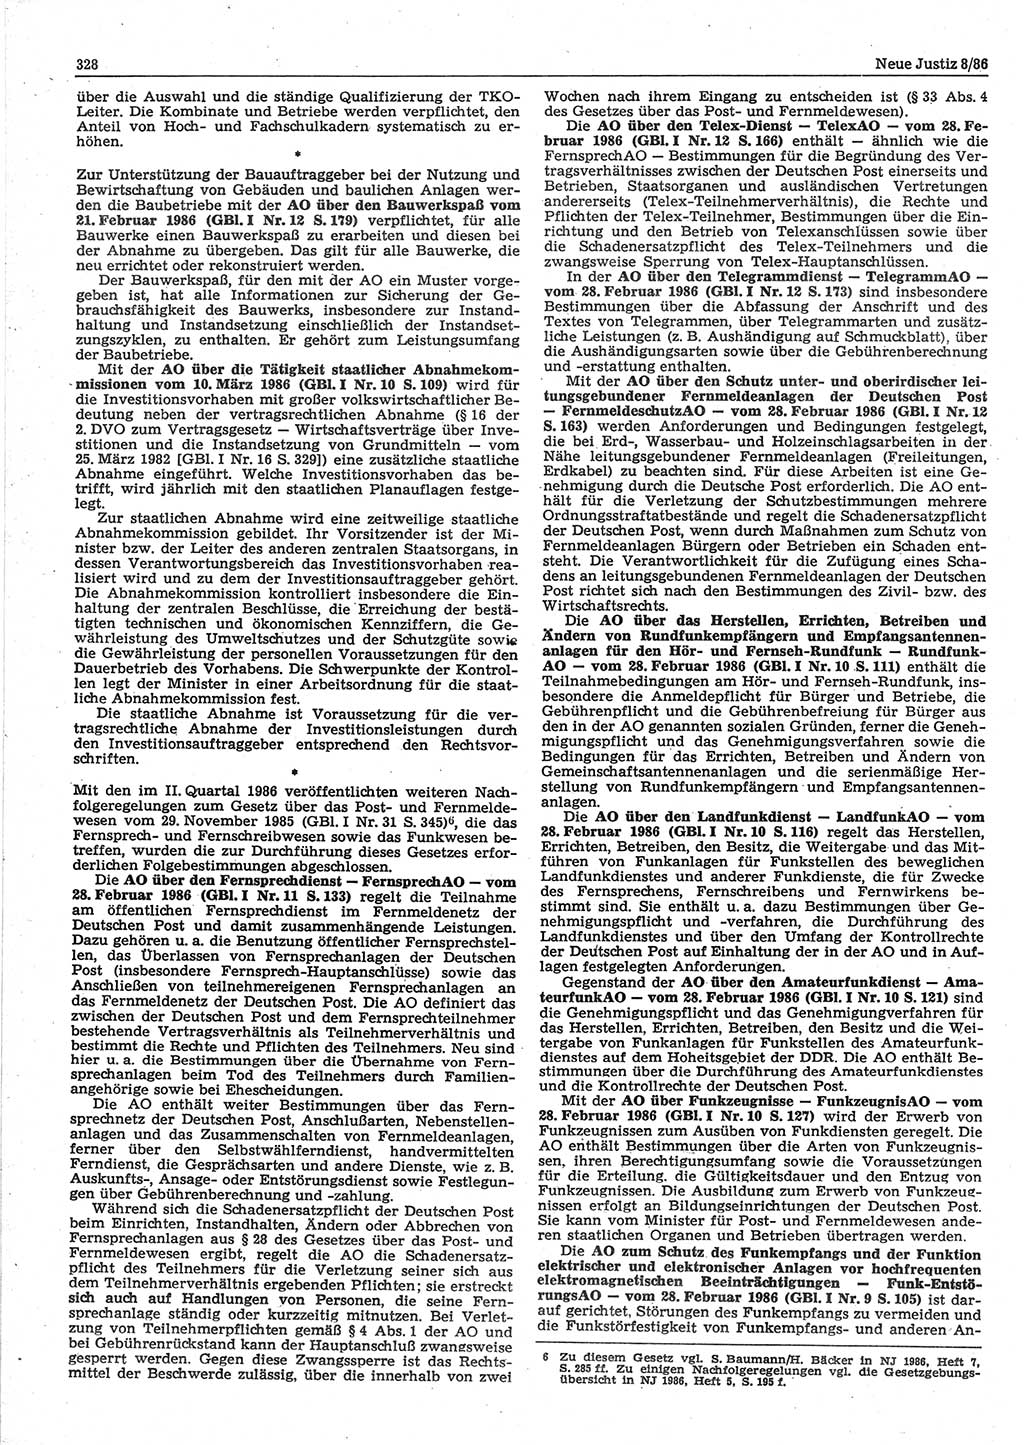 Neue Justiz (NJ), Zeitschrift für sozialistisches Recht und Gesetzlichkeit [Deutsche Demokratische Republik (DDR)], 40. Jahrgang 1986, Seite 328 (NJ DDR 1986, S. 328)